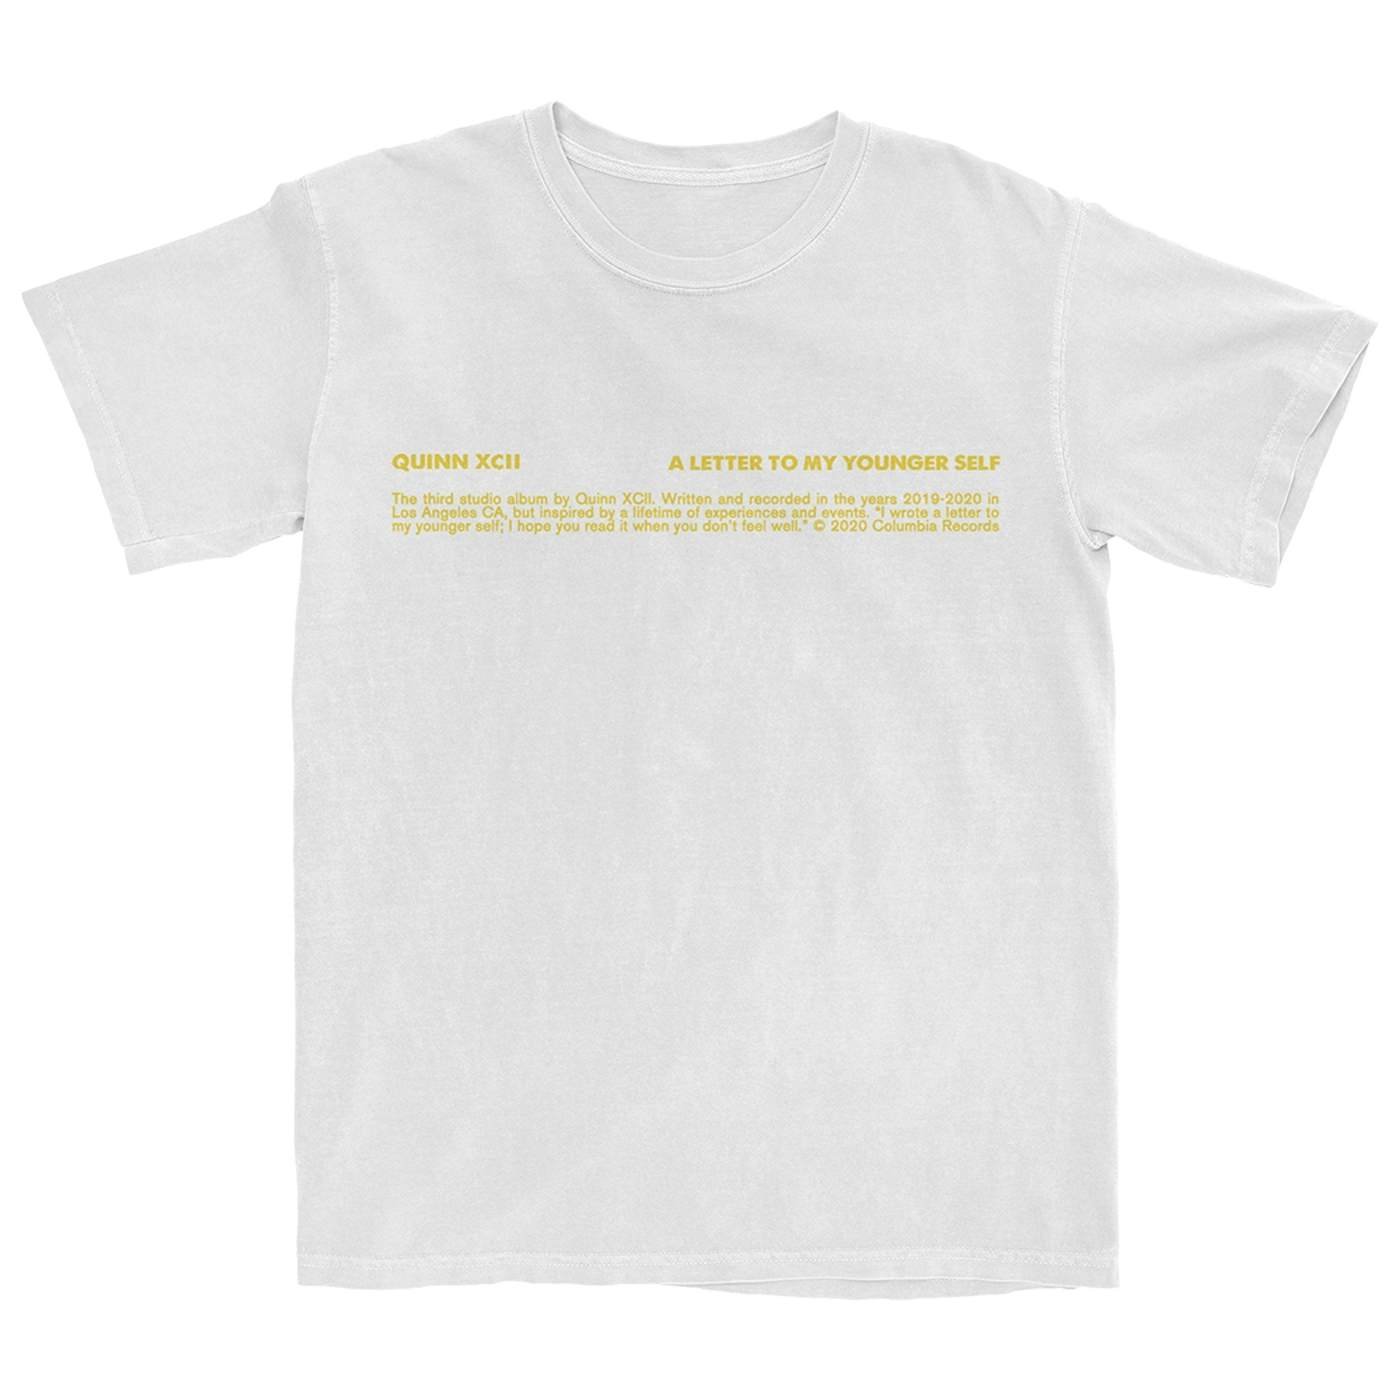 Quinn XCII Album Cover T-Shirt (White)